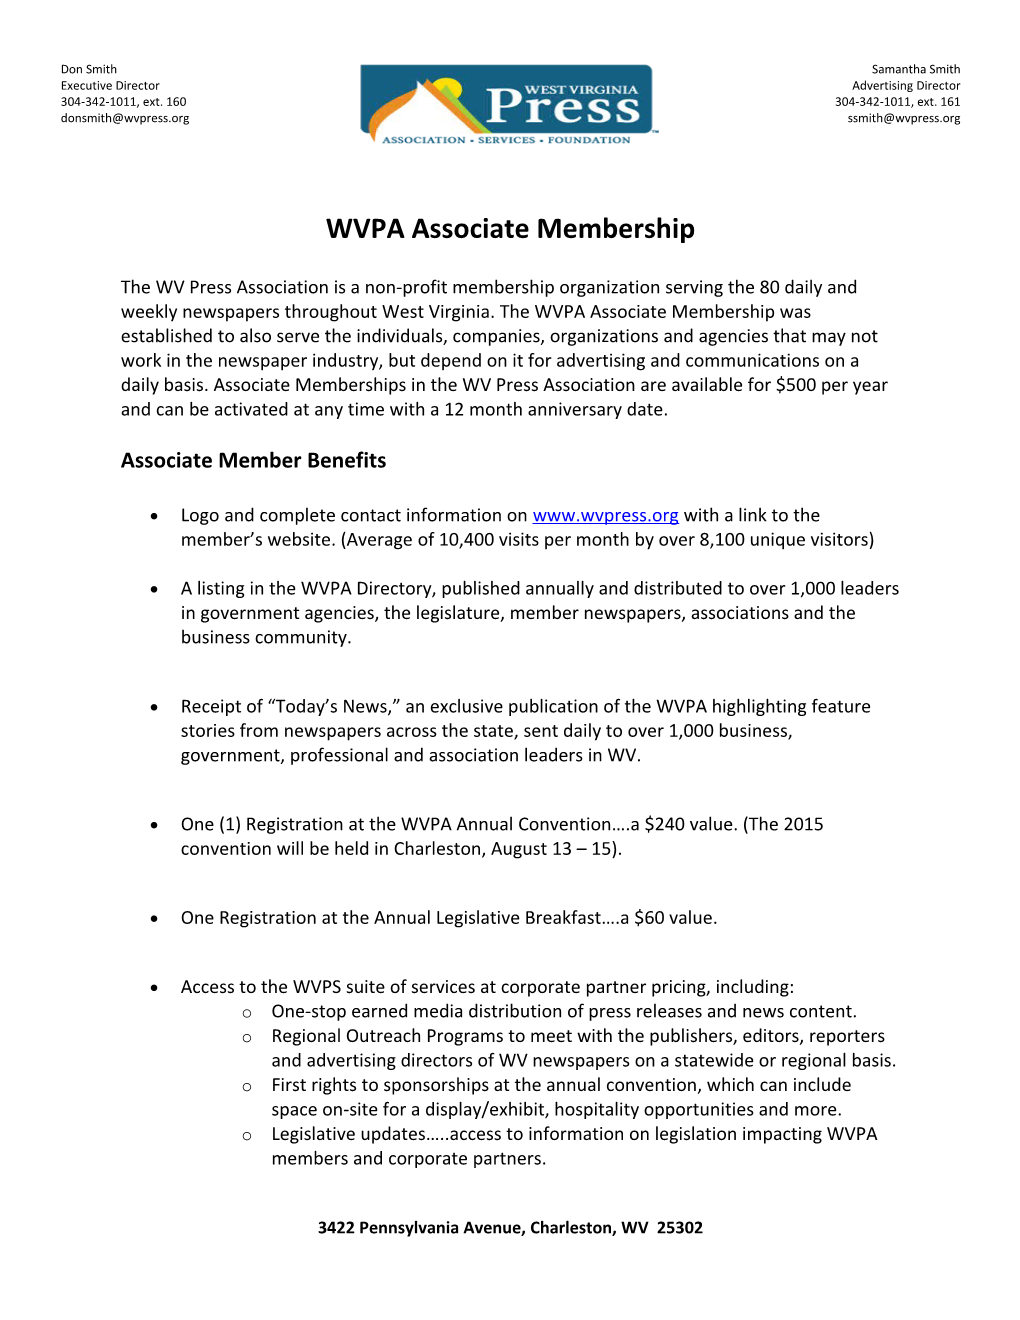 WVPA Associate Membership